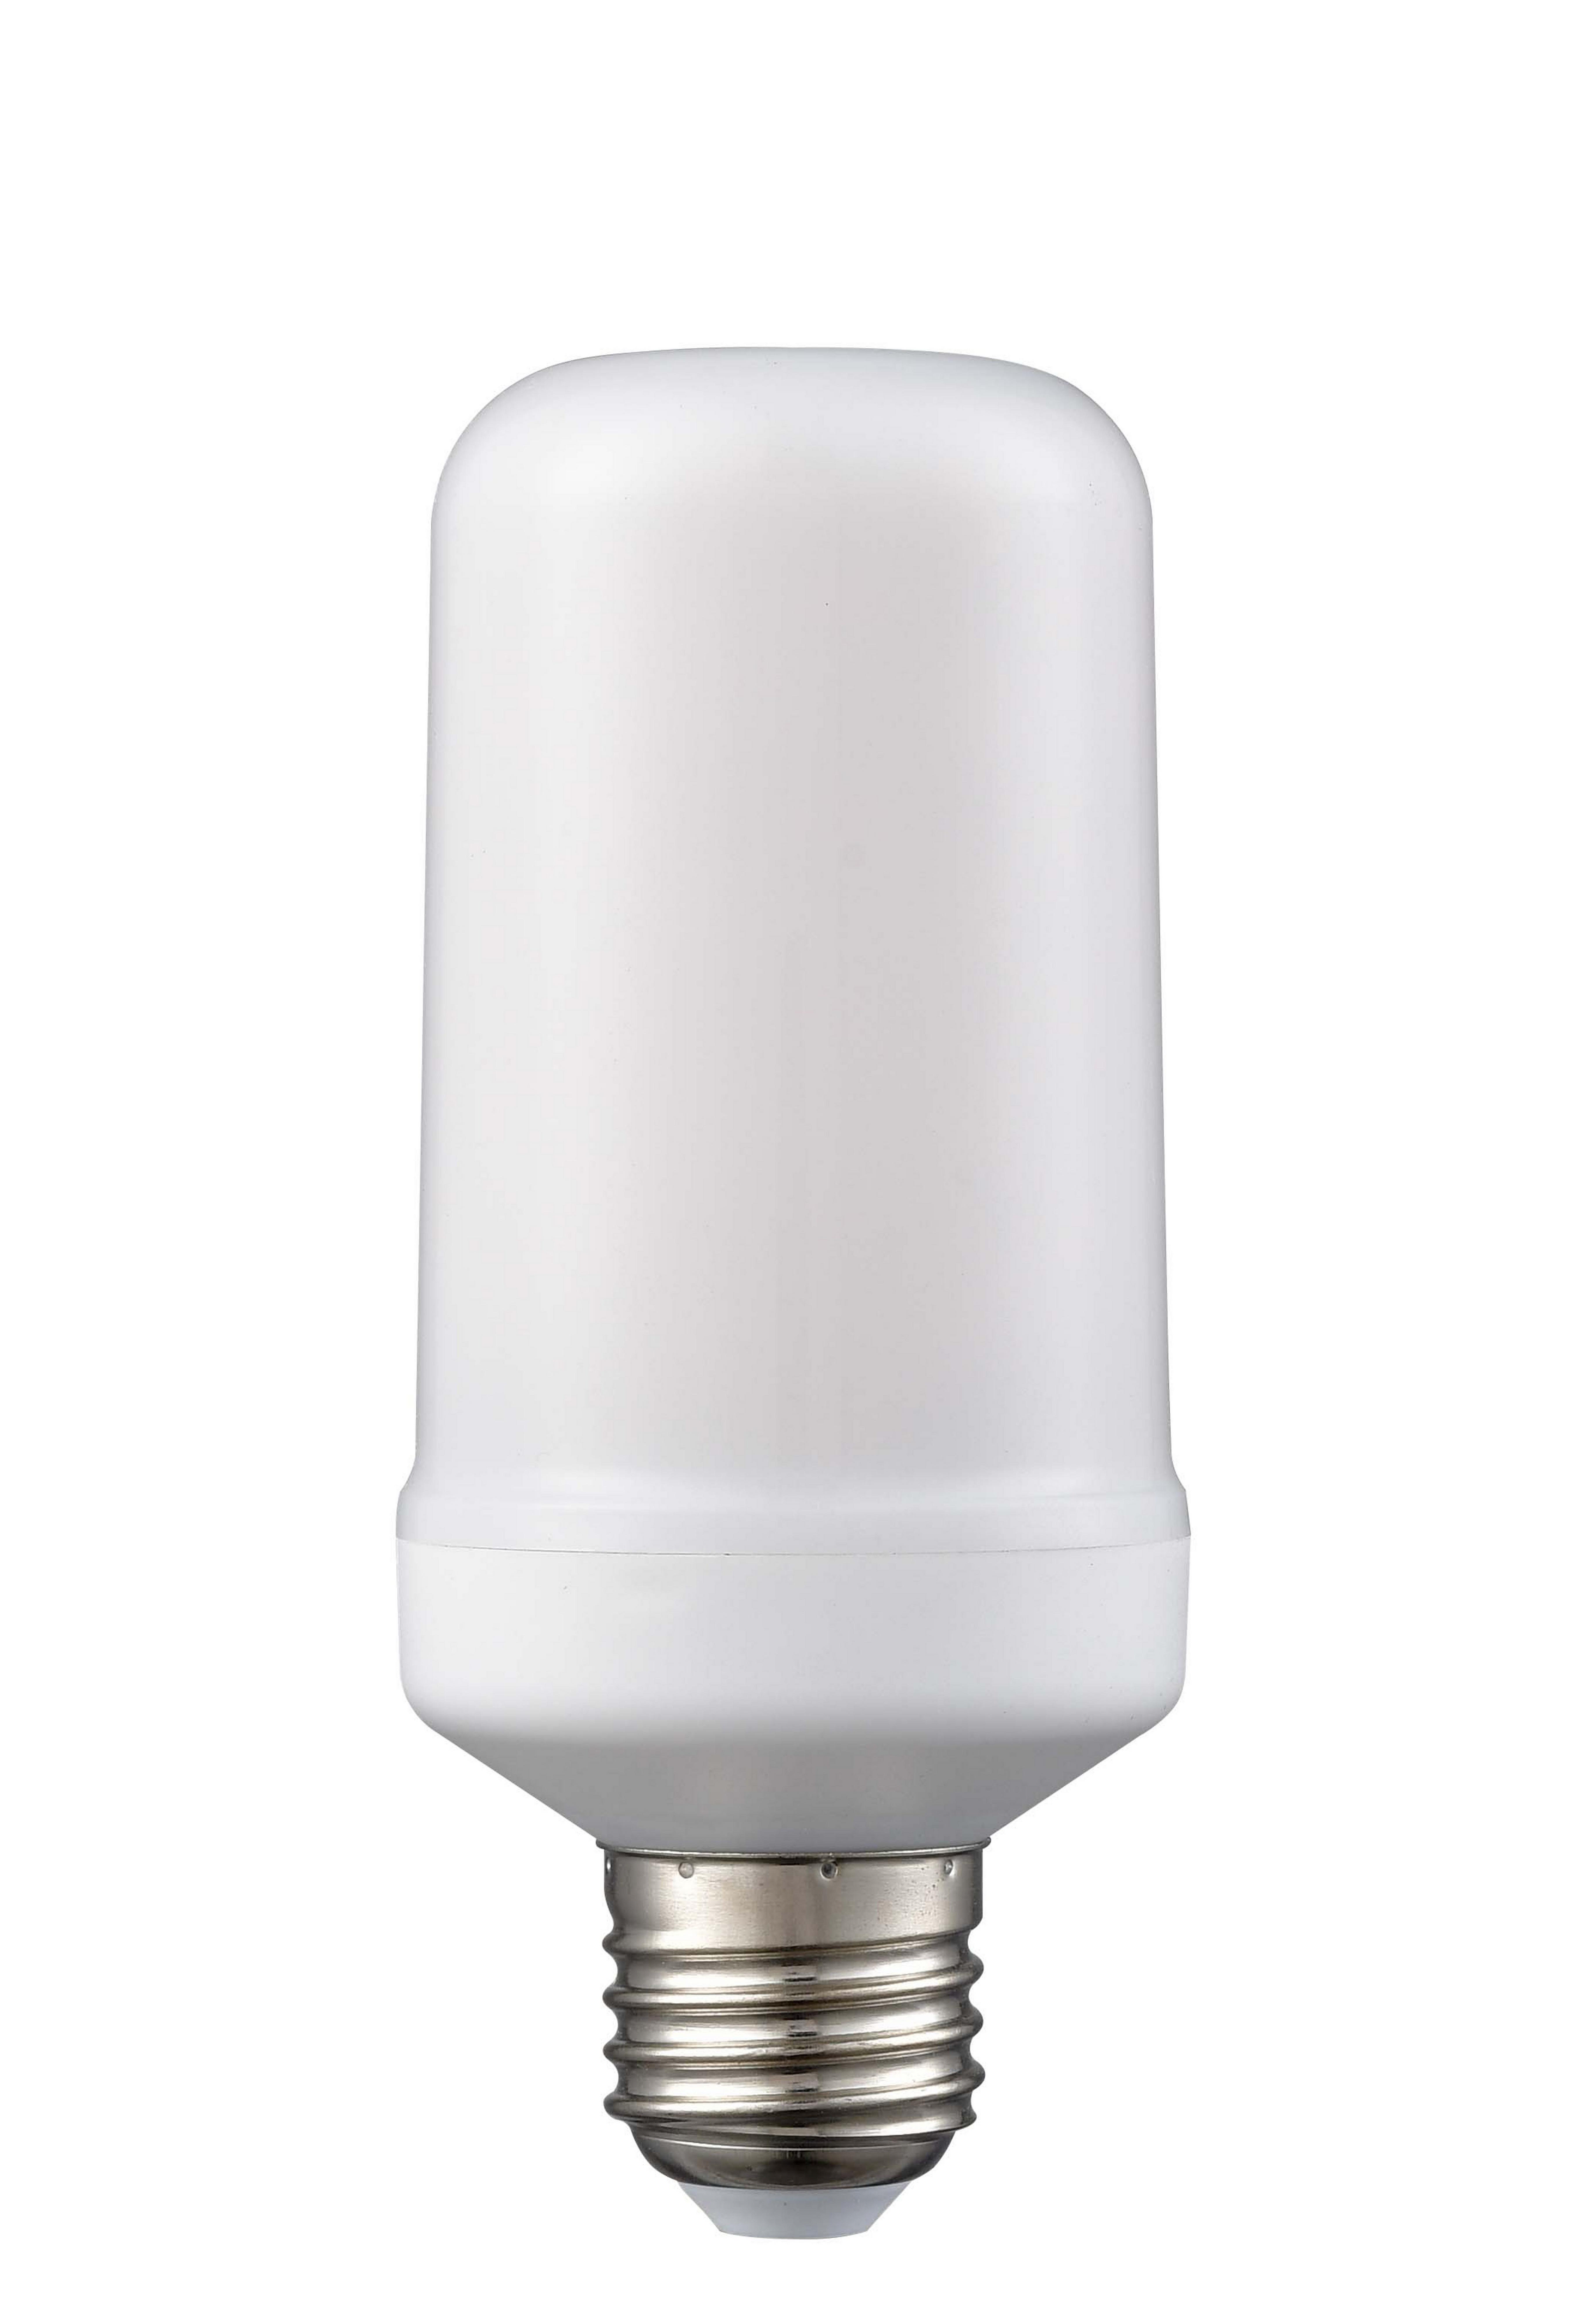 Led Žárovka C80410mm, E27, 3 Watt - bílá, sklo (12,8cm) - Modern Living